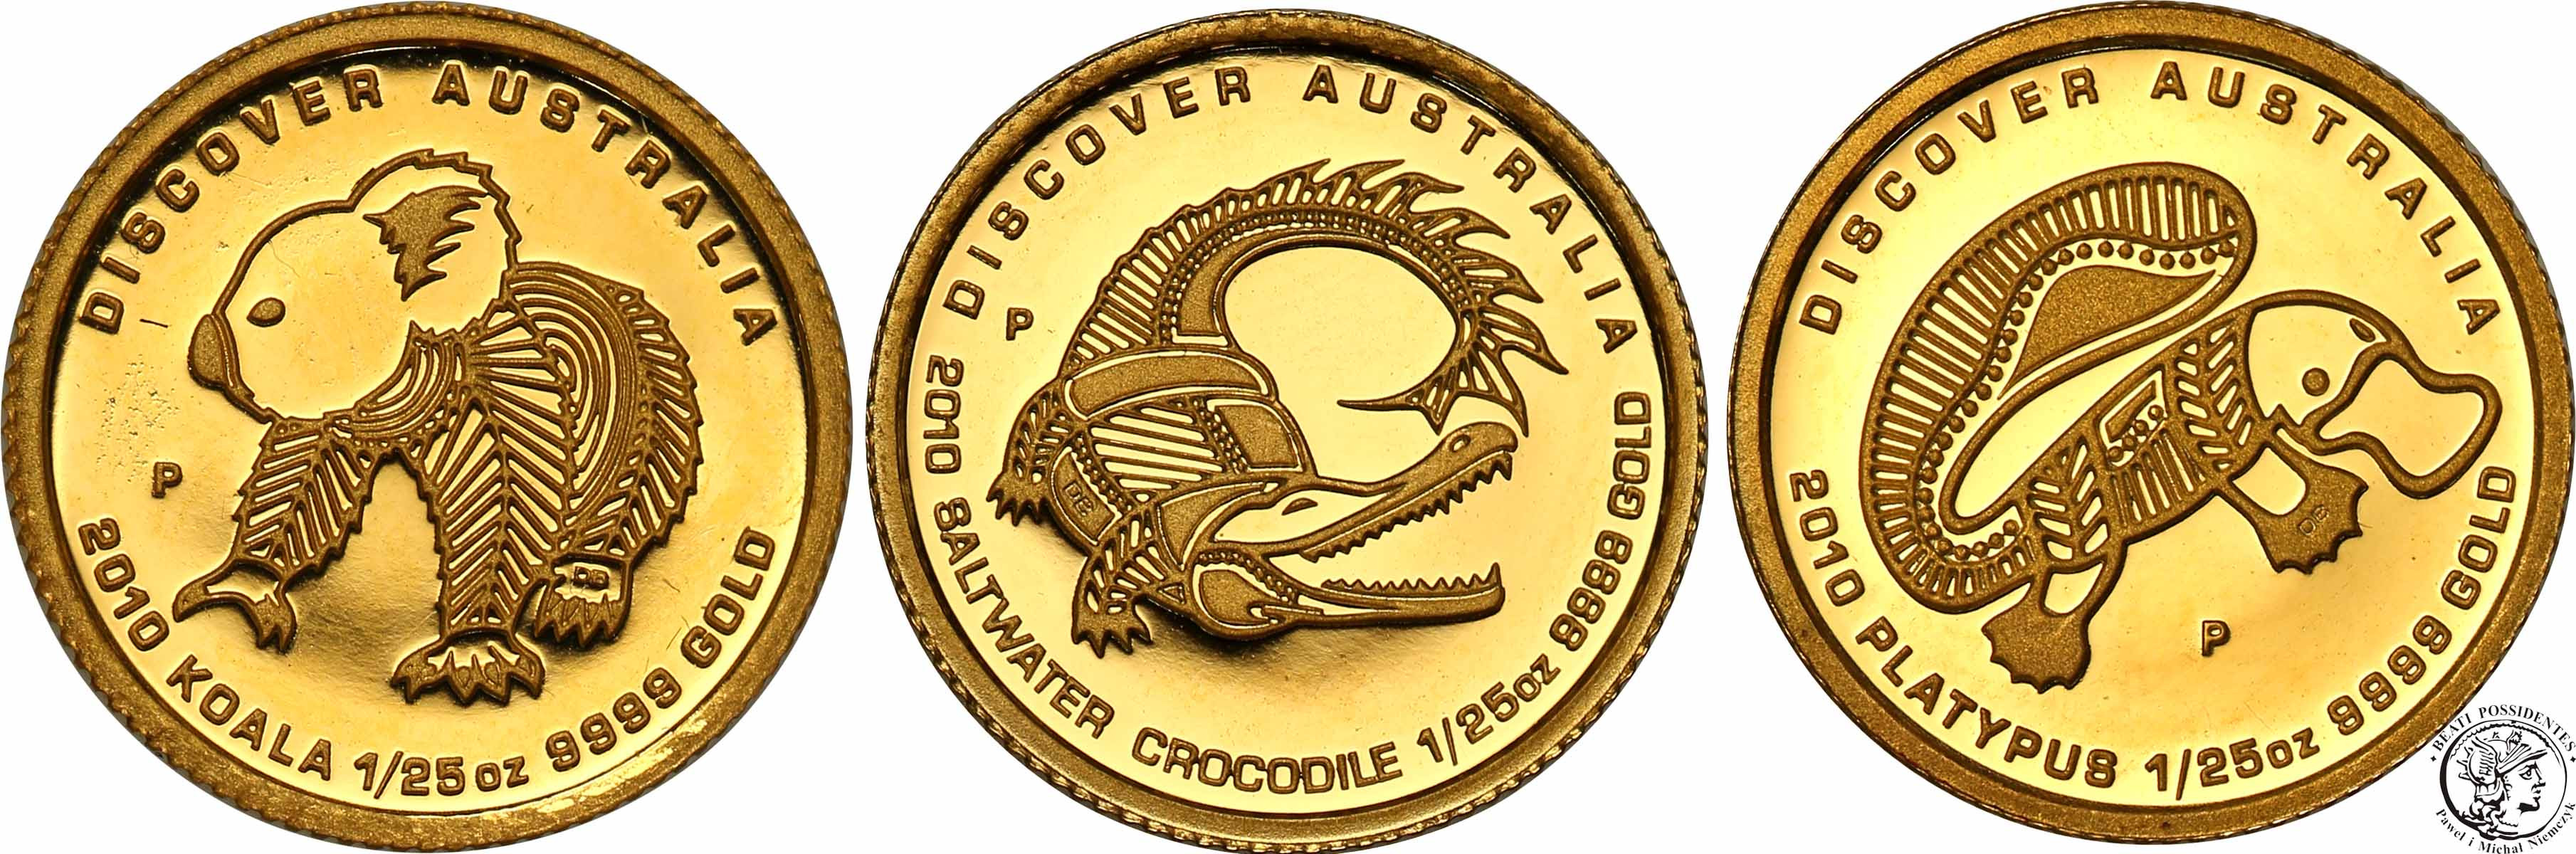 Australia 5 dolarów 2009 lot 5 szt x 1/25 uncji złota Discover Australia st. L